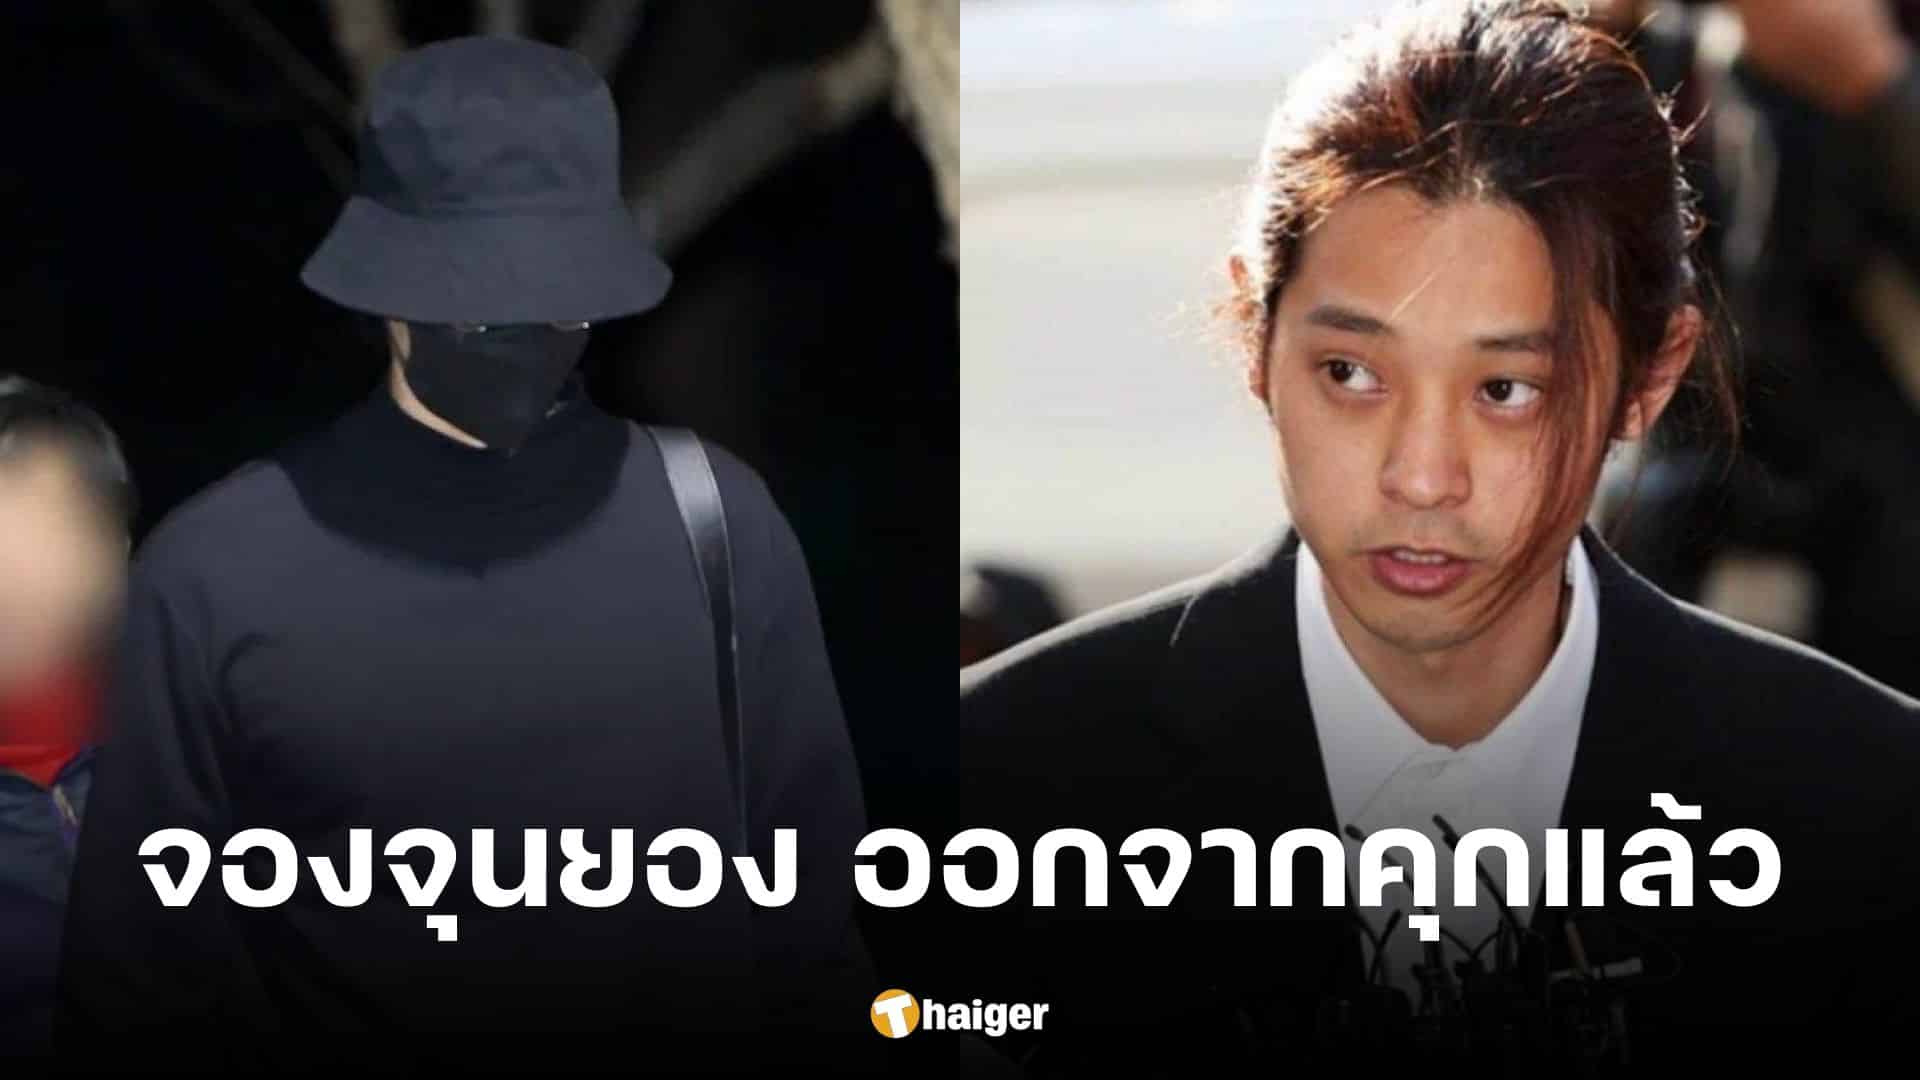 'จองจุนยอง' ย่องเงียบออกคุก พ้นโทษ 5 ปี ข้อหาข่มขืน-แชร์คลิปอนาจาร